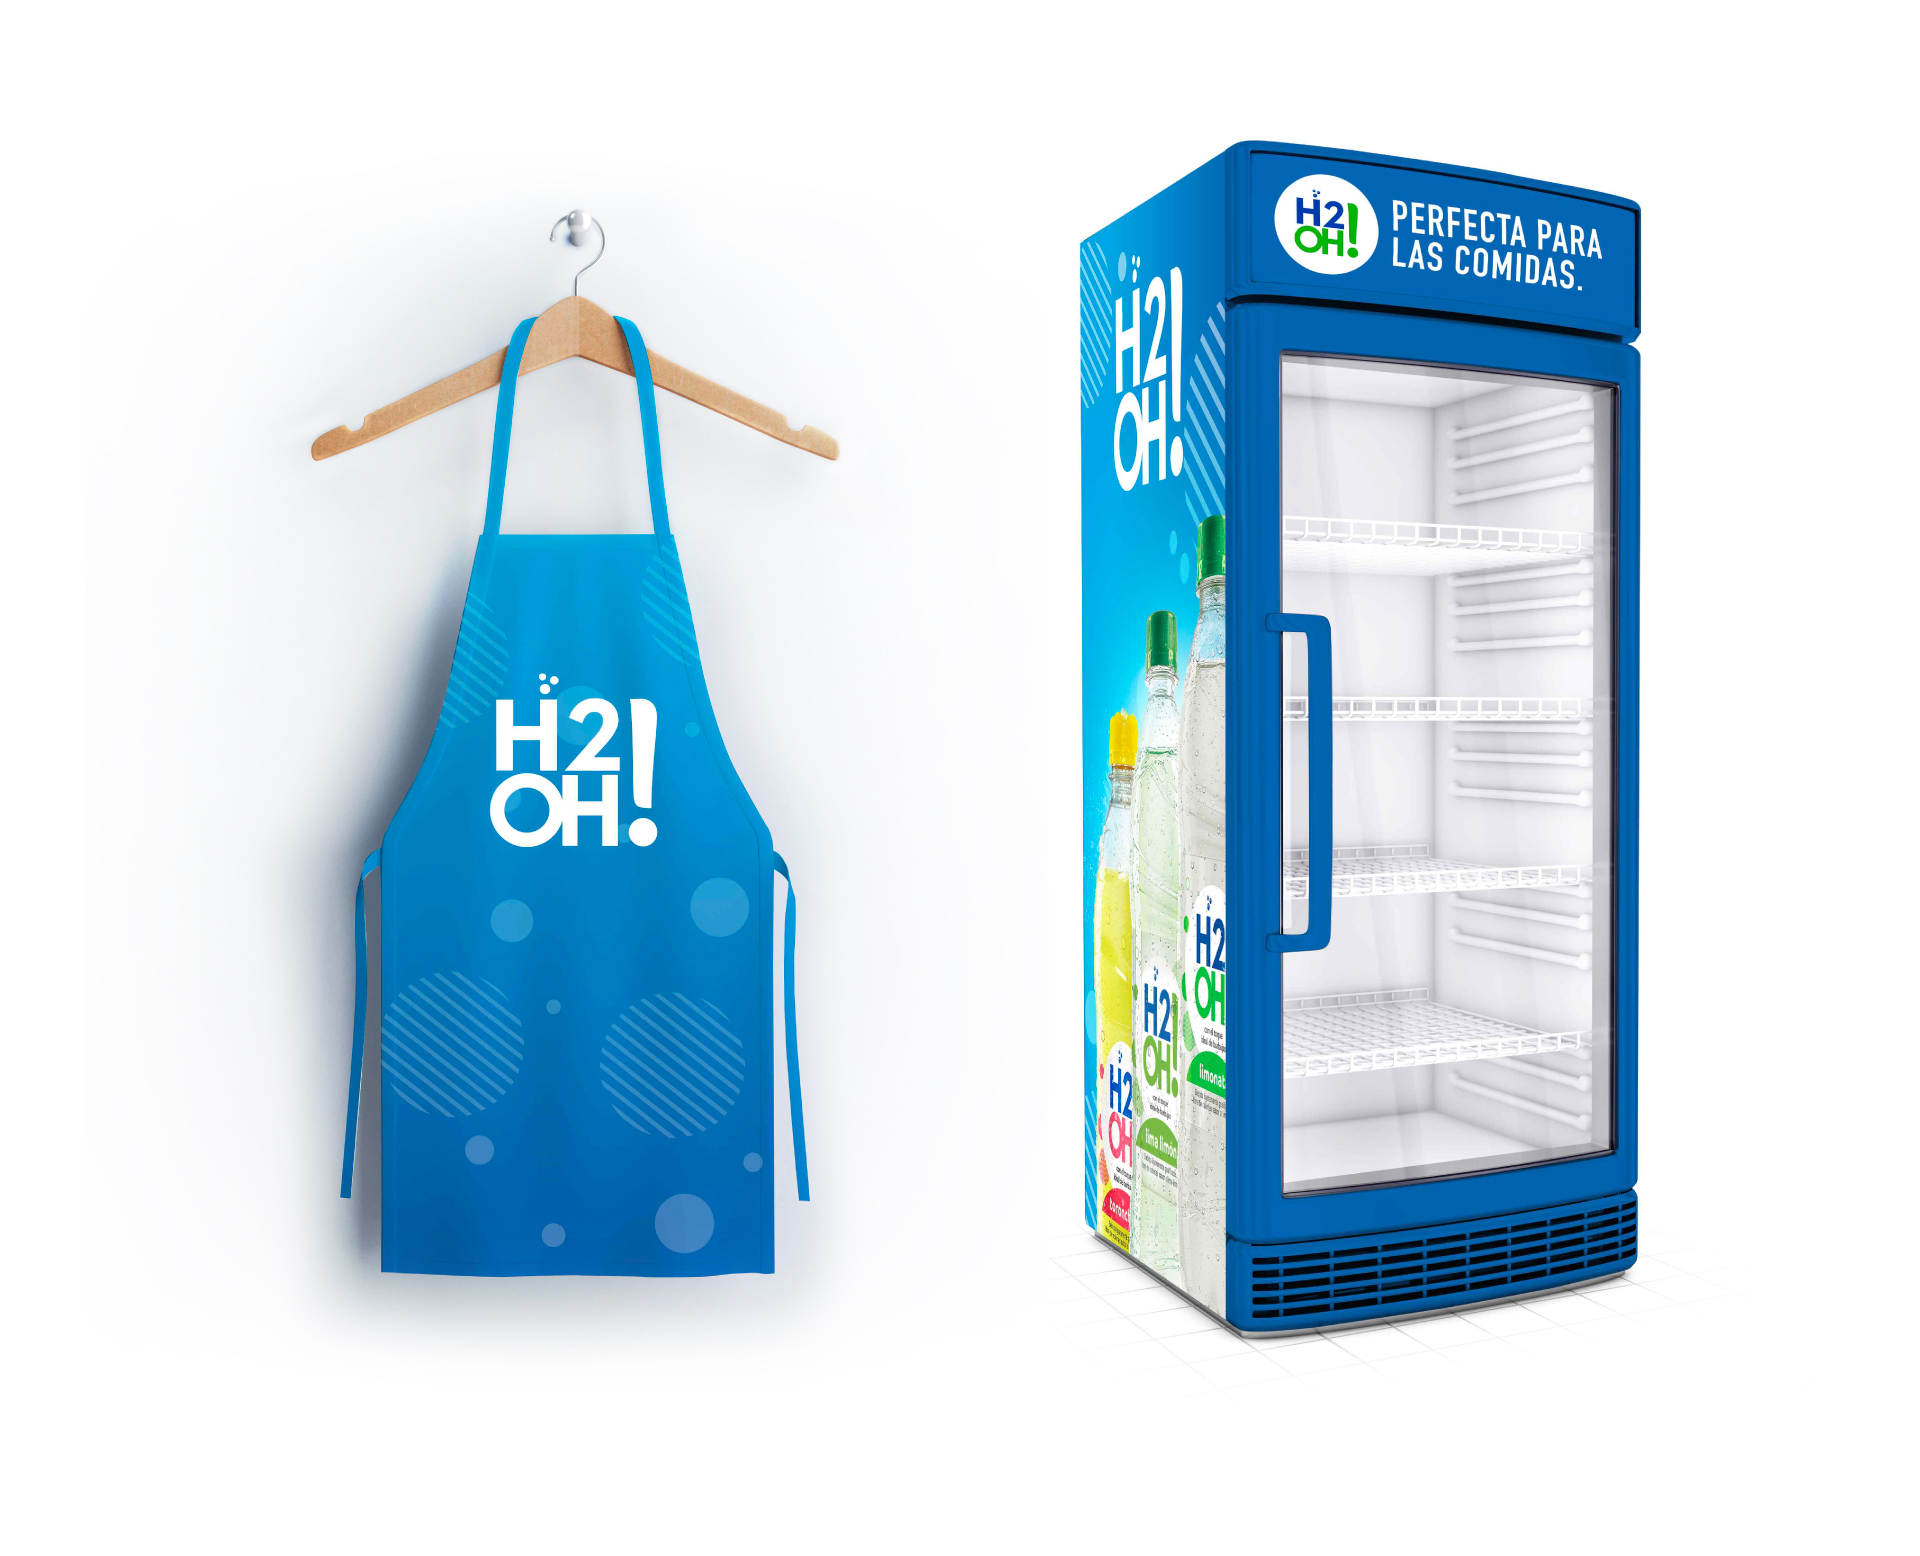 Diseño de merchandising y material POP para marca de bebidas H2Oh. Diseño gráfico